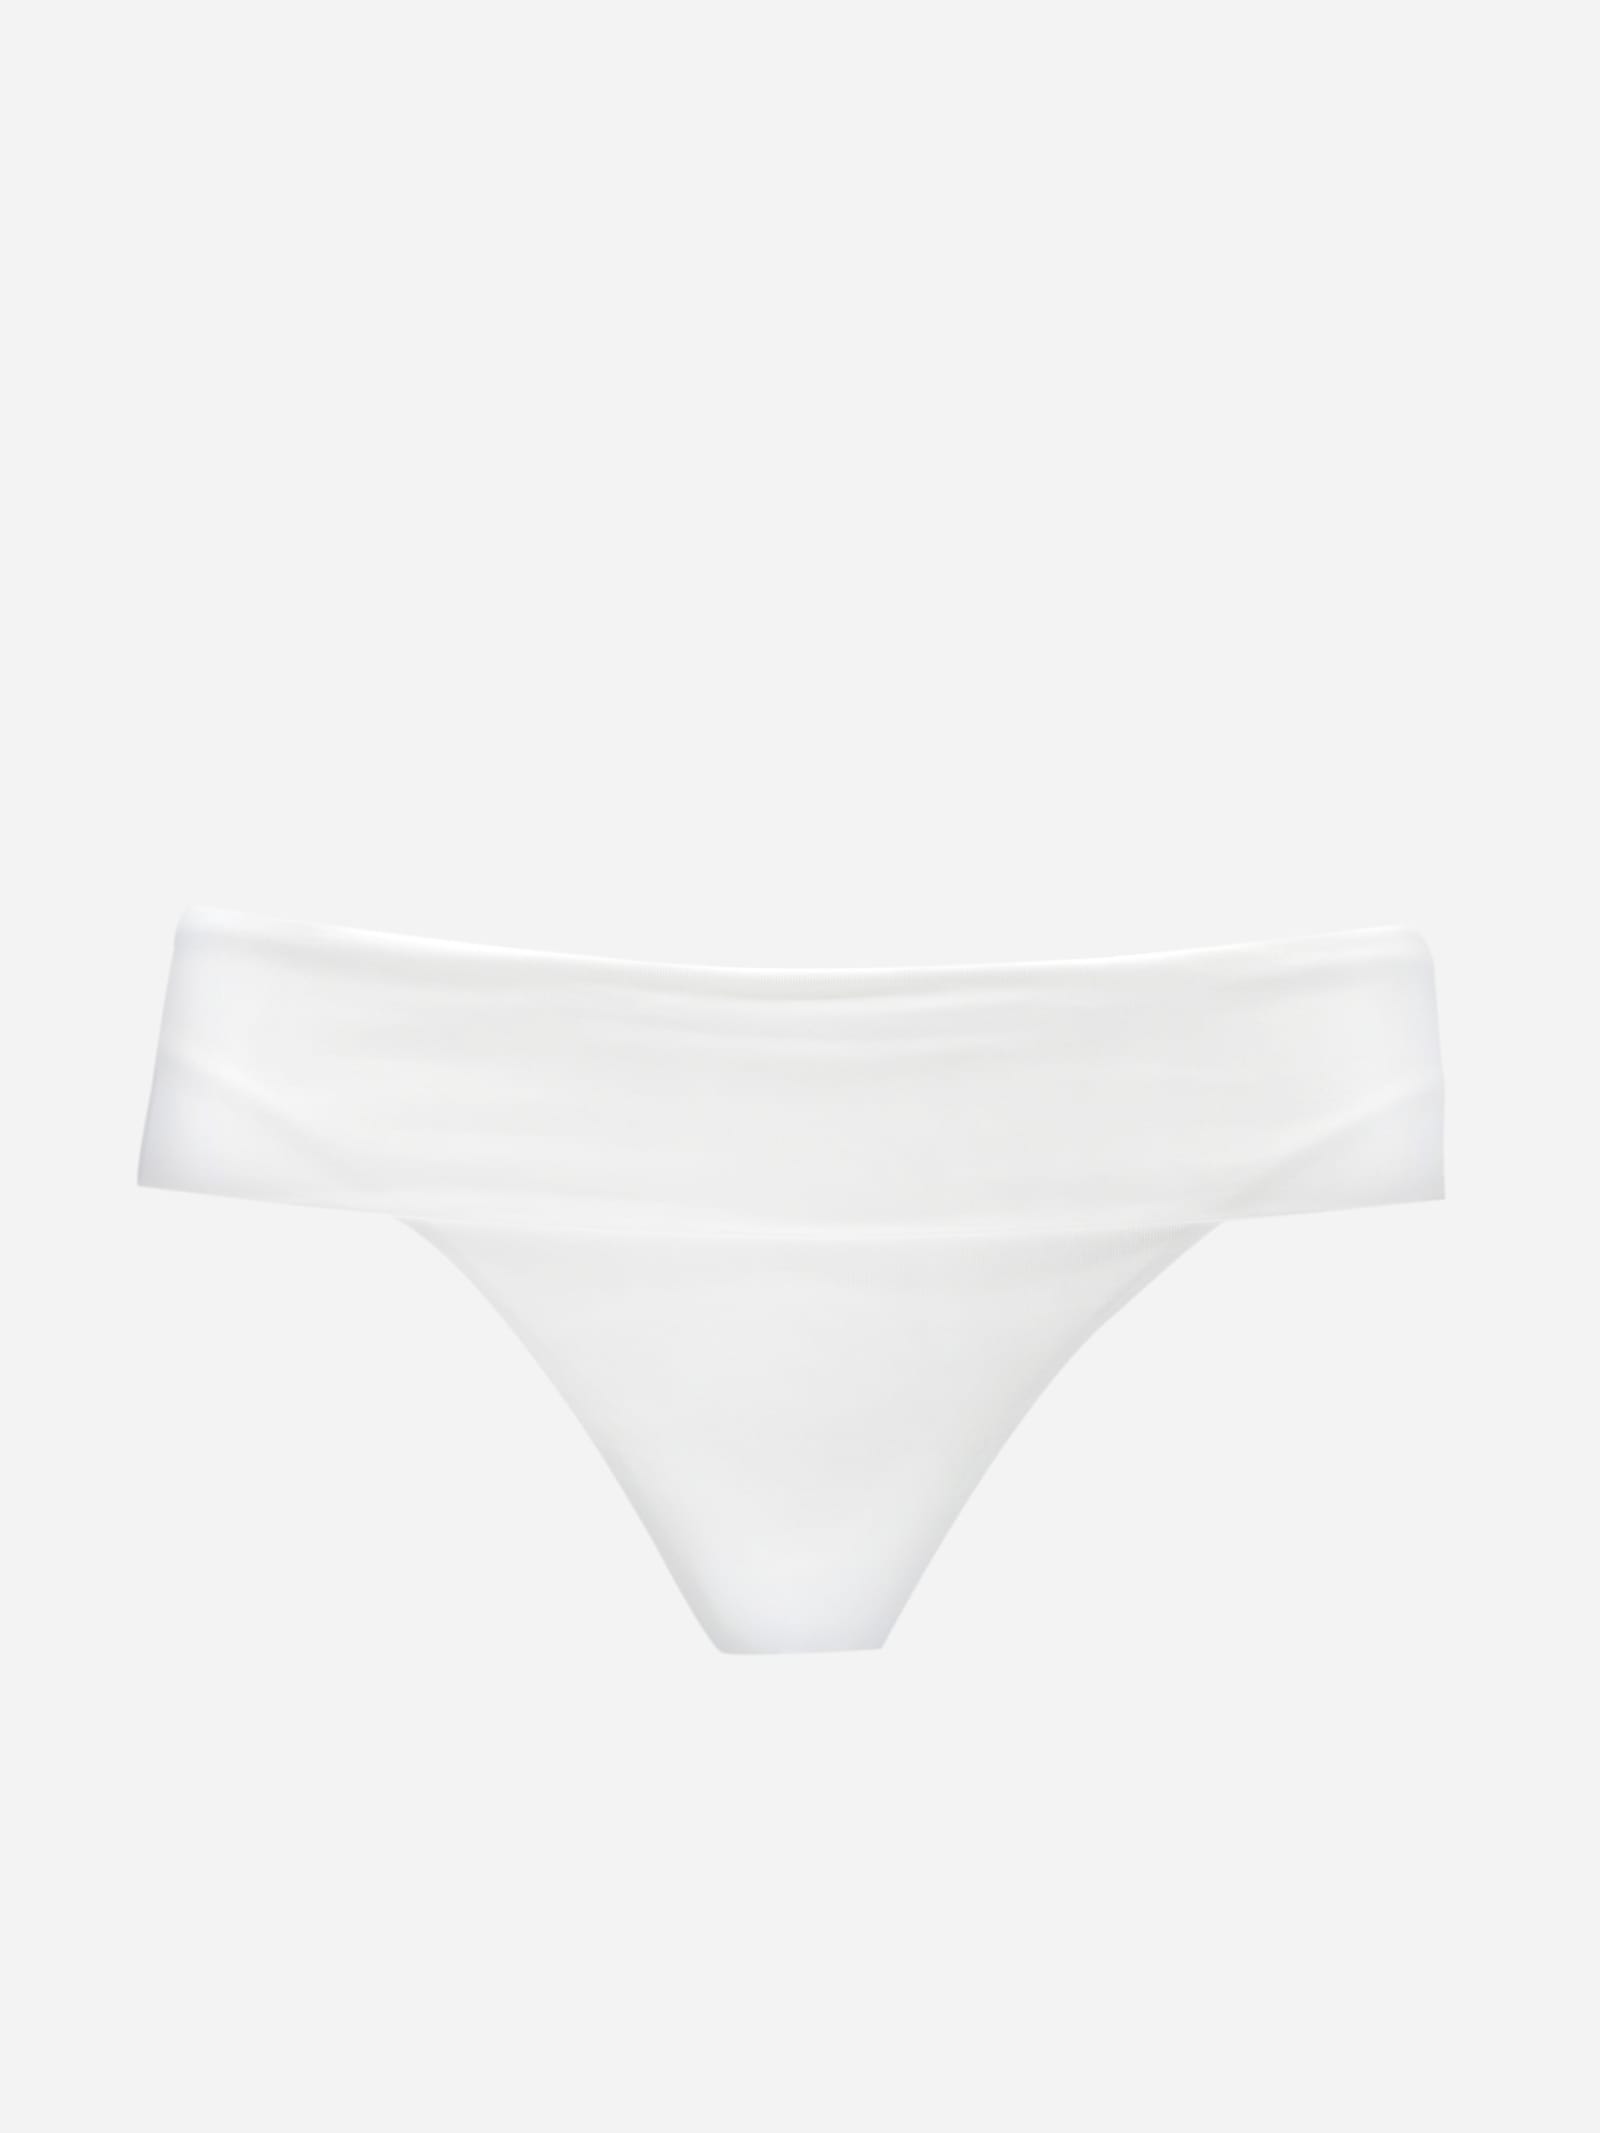 Fisico Cristina Ferrari Bikini Briefs With Logo Application In White